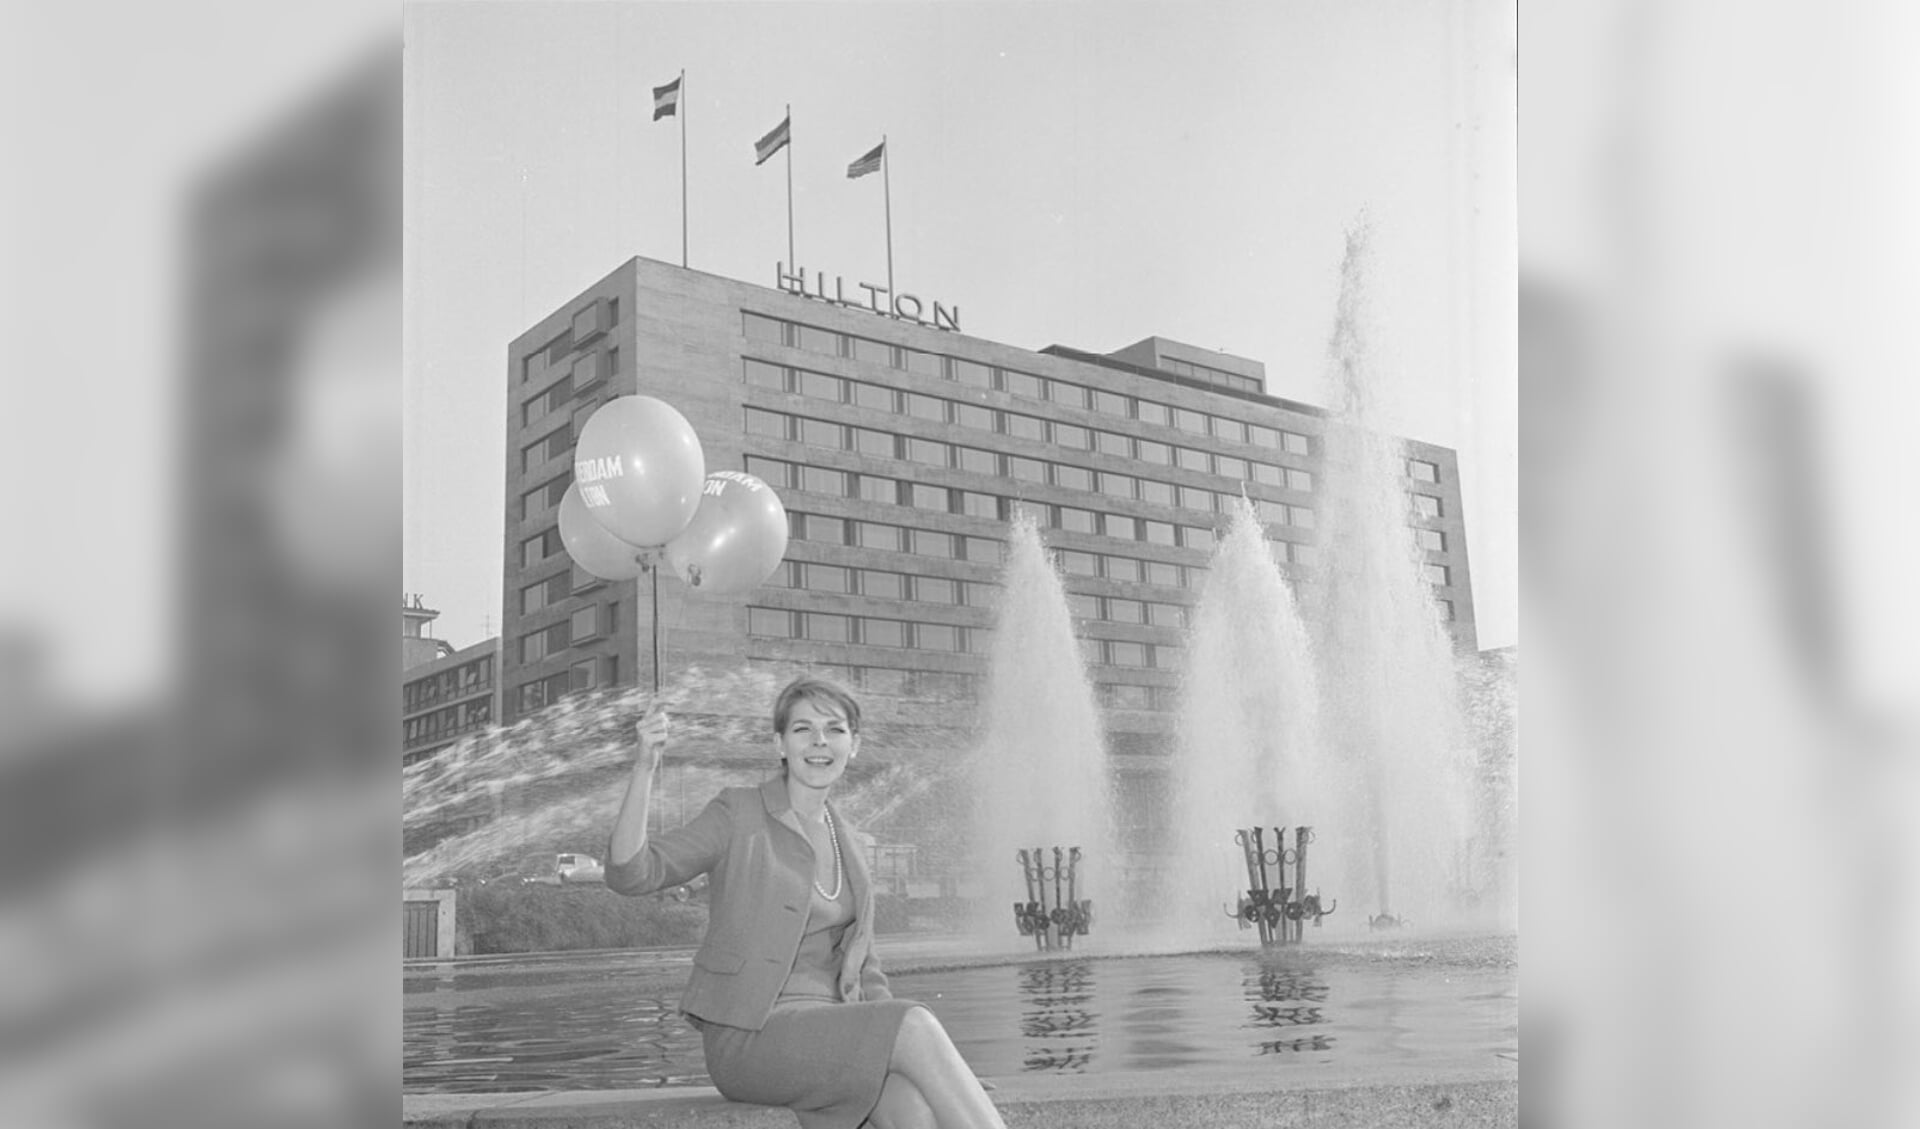 Zestig jaar geleden werd het Hilton Hotel geopend. Foto: Ary Groeneveld/Stadsarchief Rotterdam